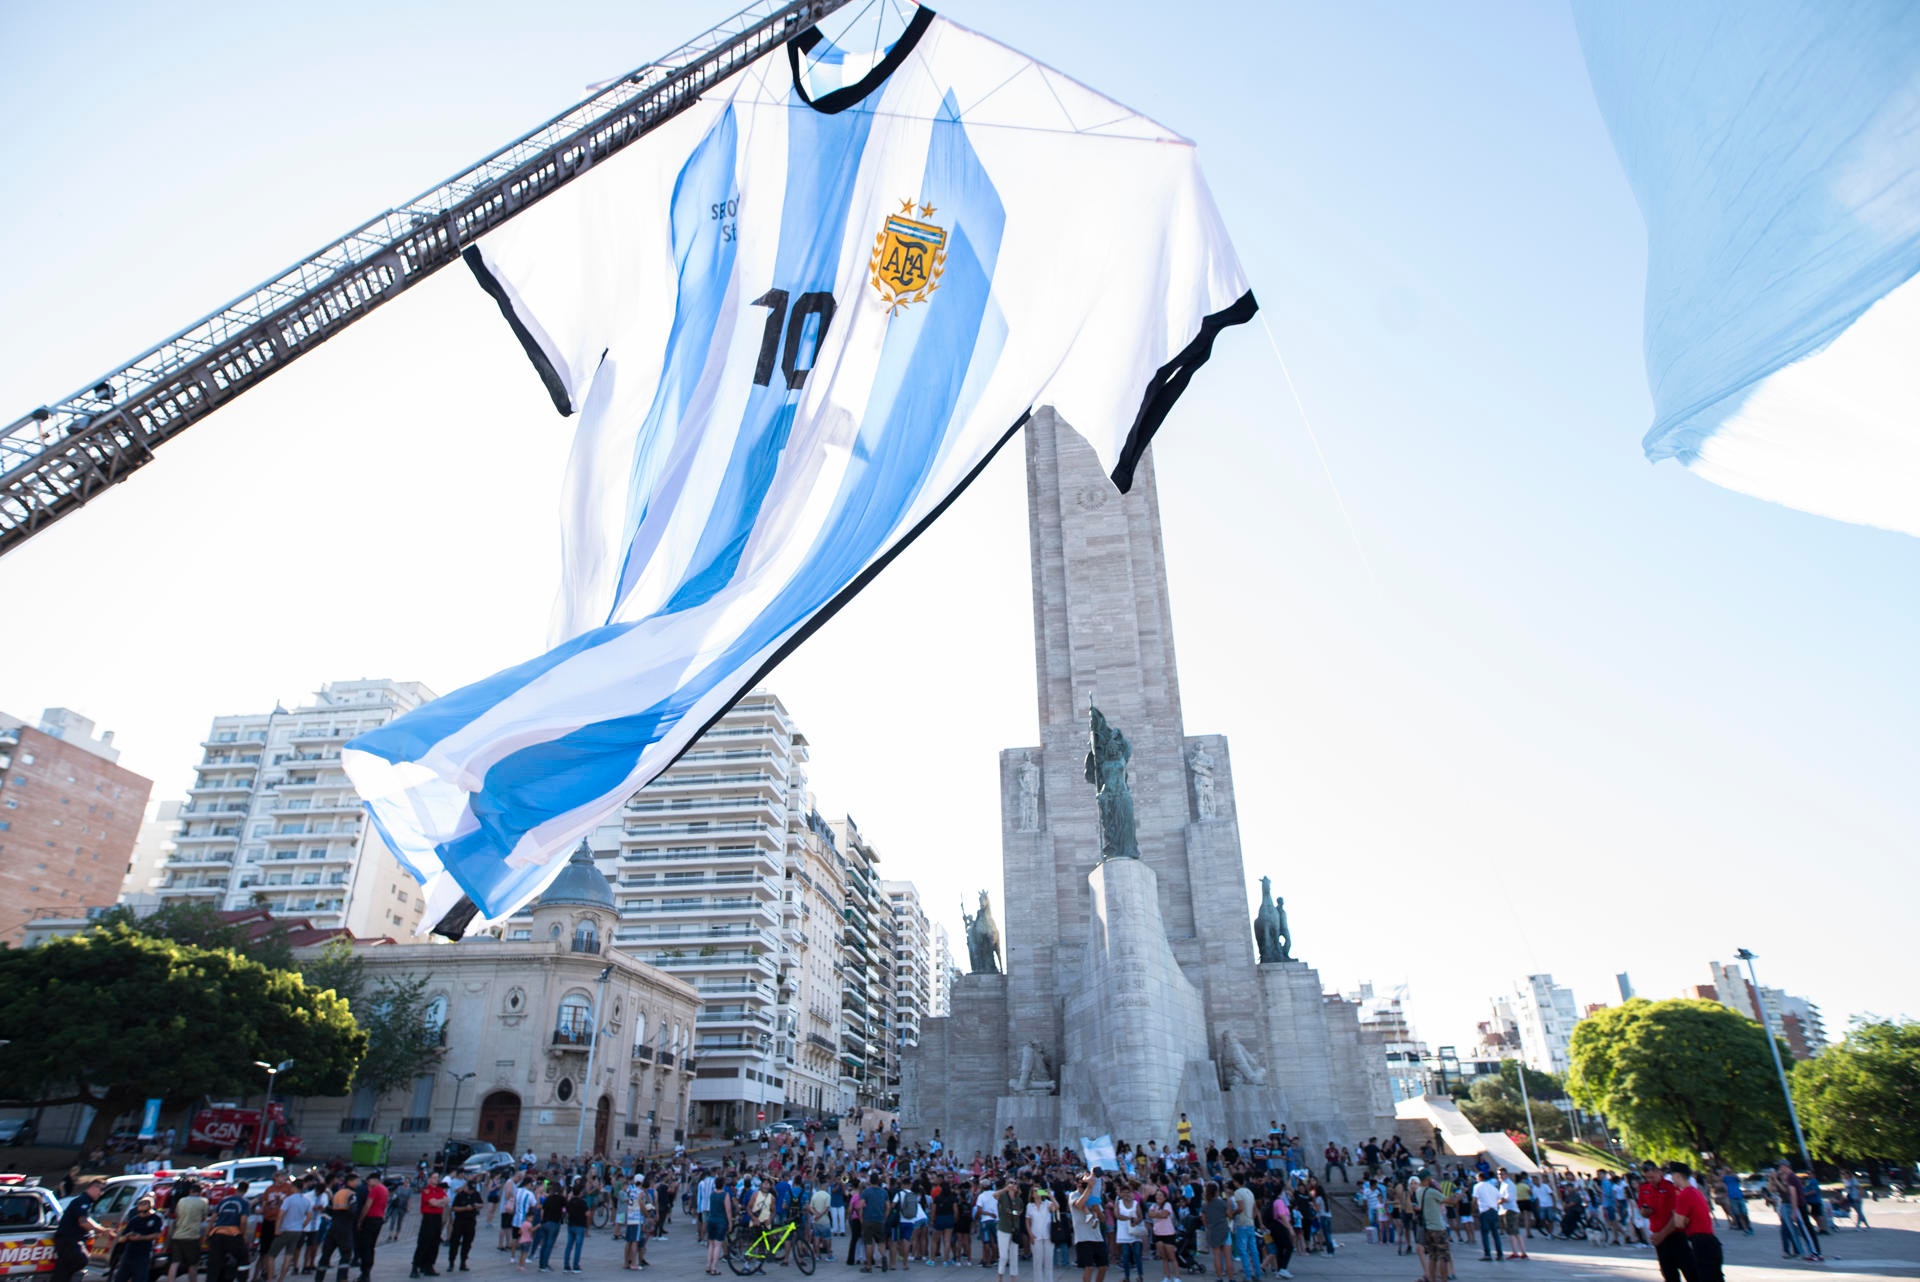 Argentina es uno de los países más representados en el mapa fútbol. A punto de terminar el mes de marzo, hacemos una parada para repasar qué jugadores del país sudamericano han conseguido hacer más goles en el último año (no natural).